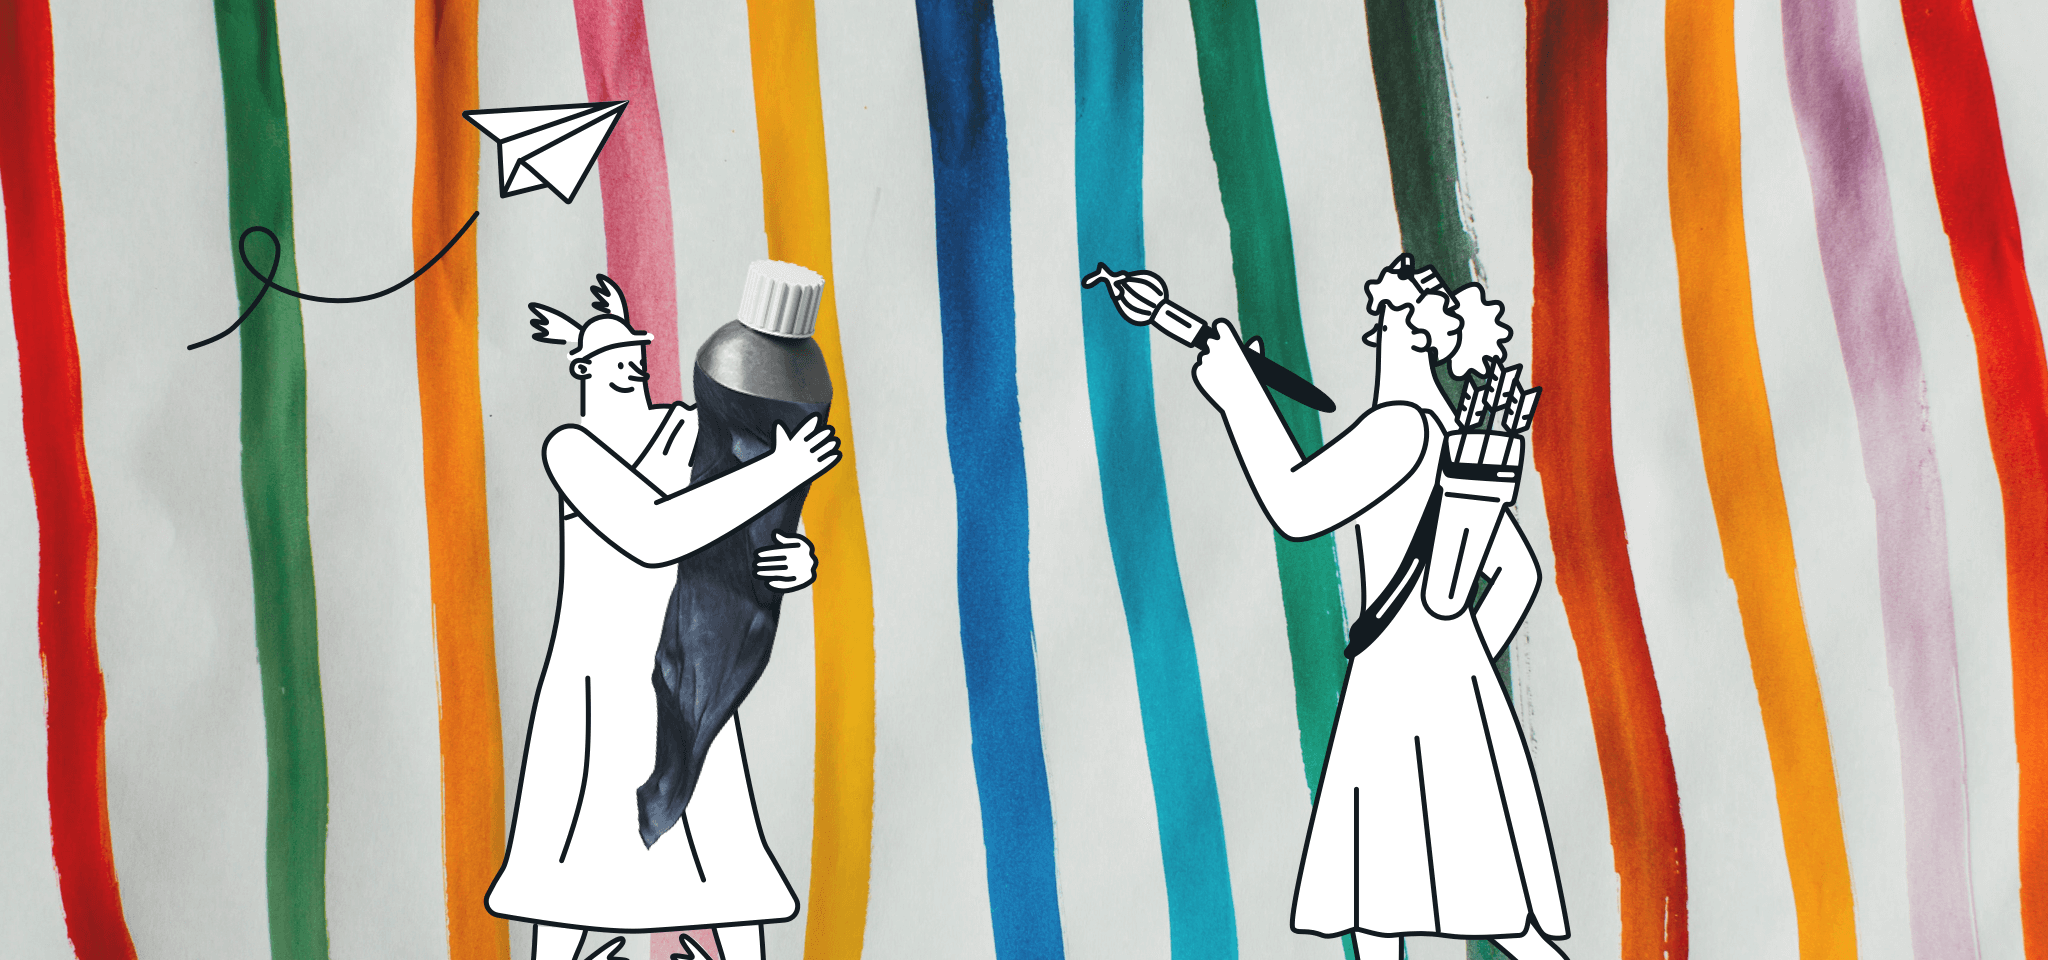 Hermès aide une déesse à peindre des lignes colorées